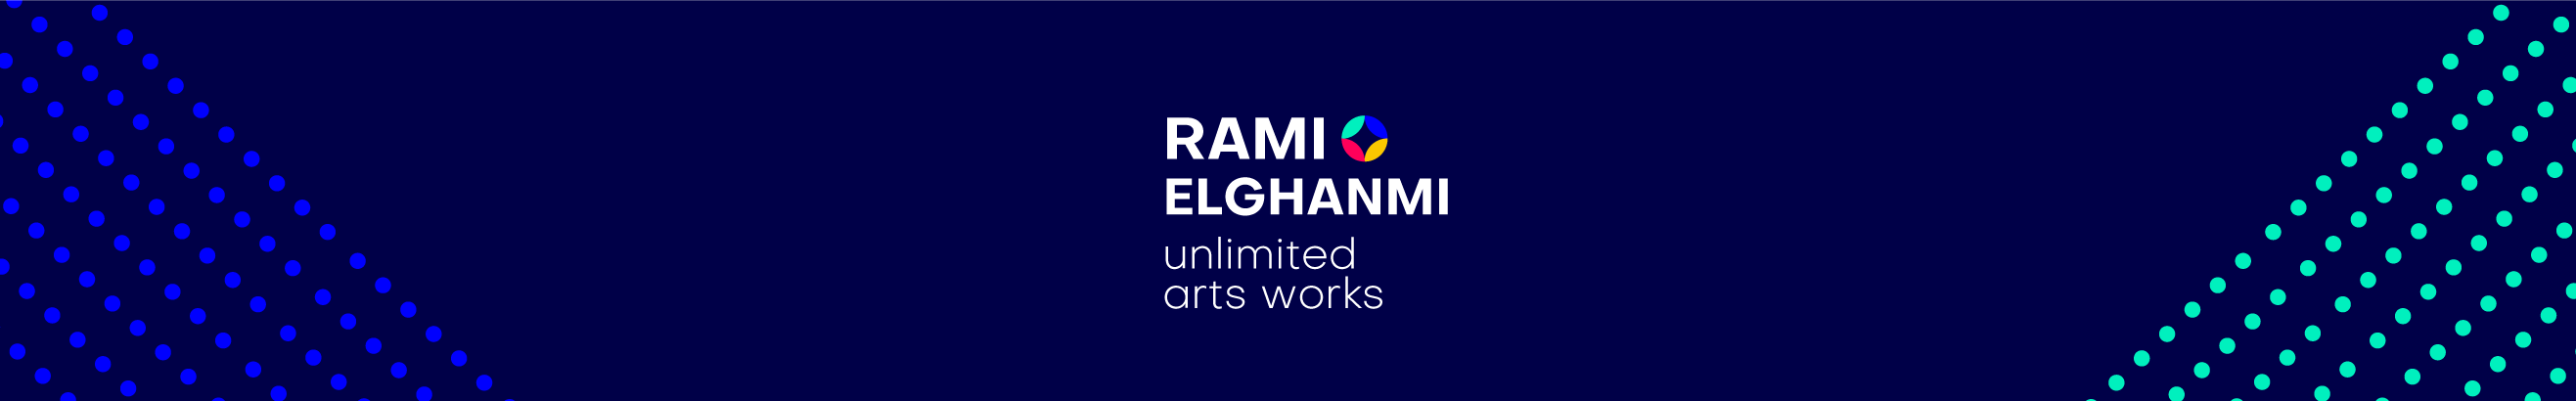 Rami El Ghanmi's profile banner